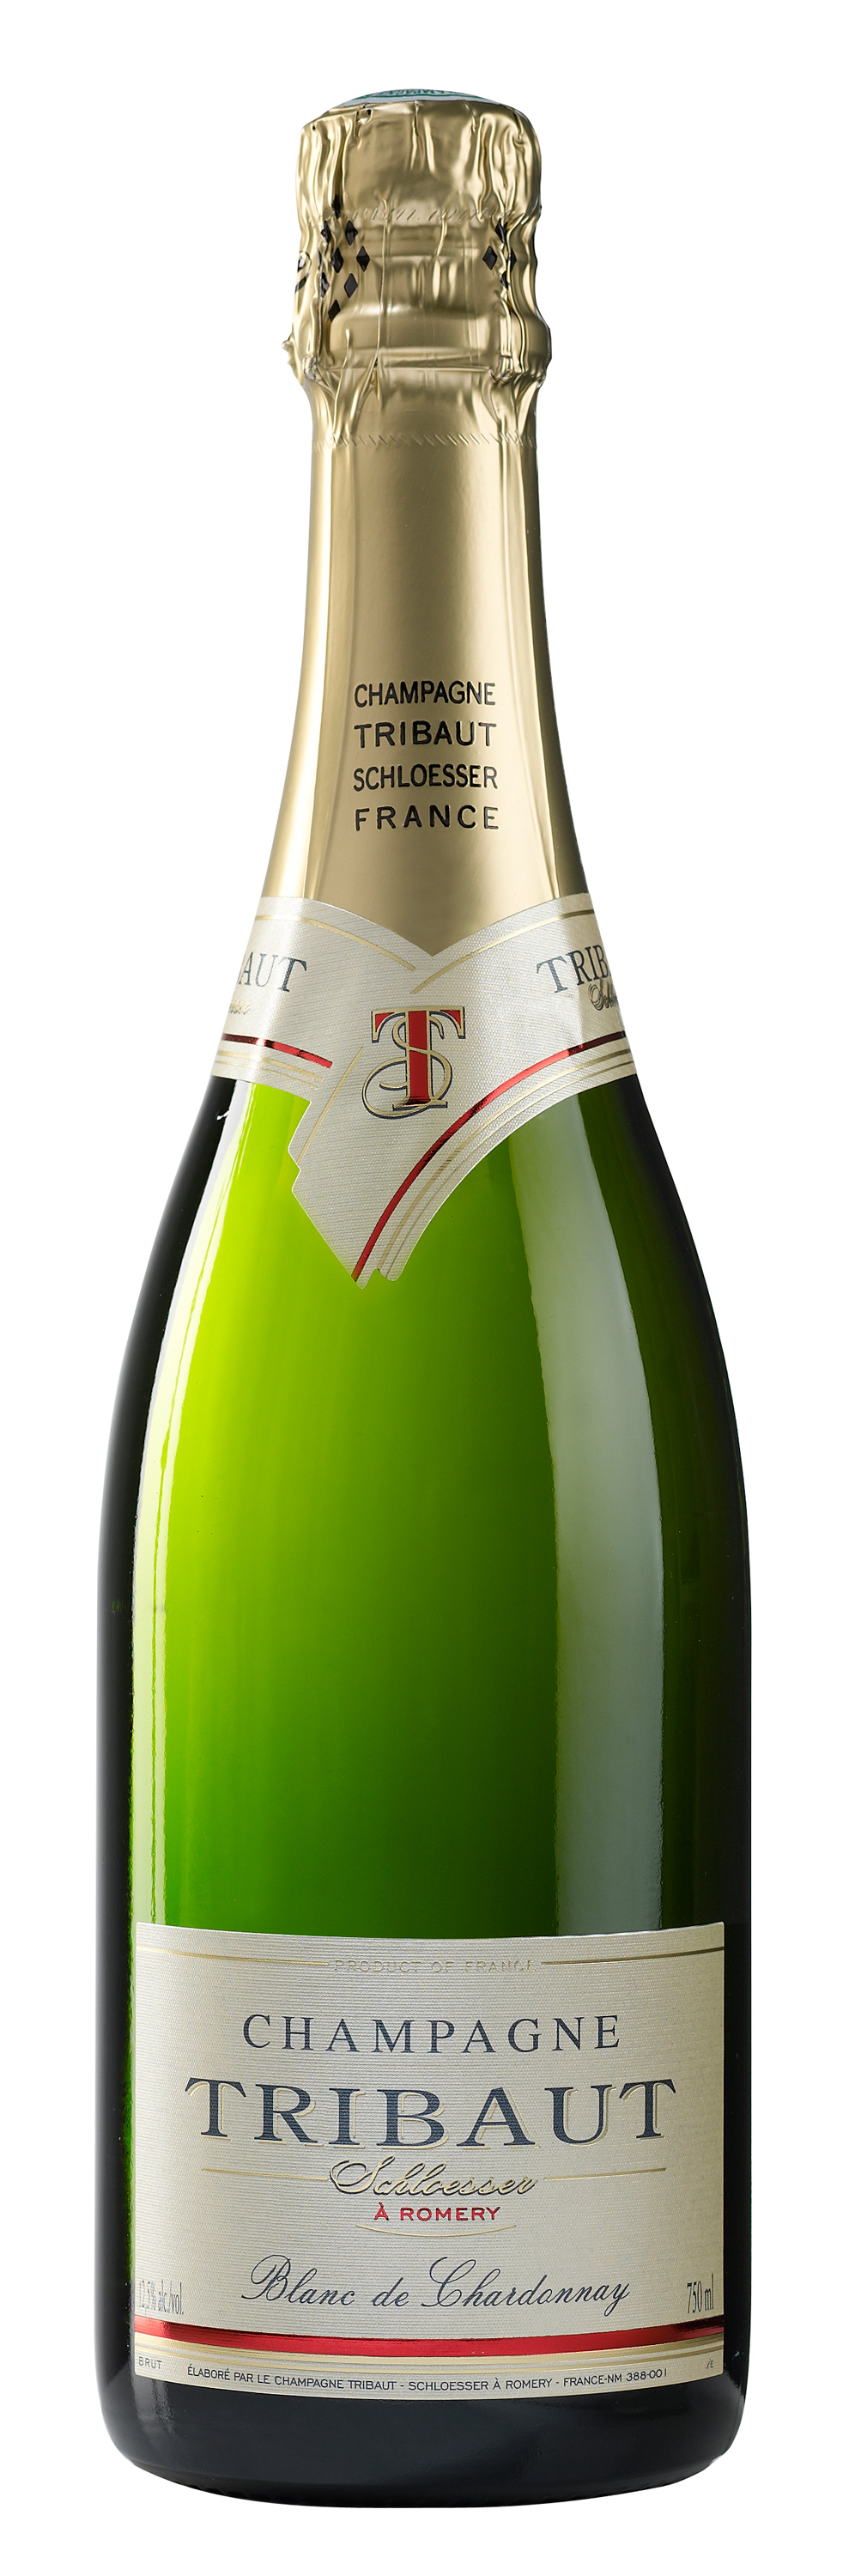 MV Champagne Tribaut Le Blanc de Chardonnay Extra Brut image